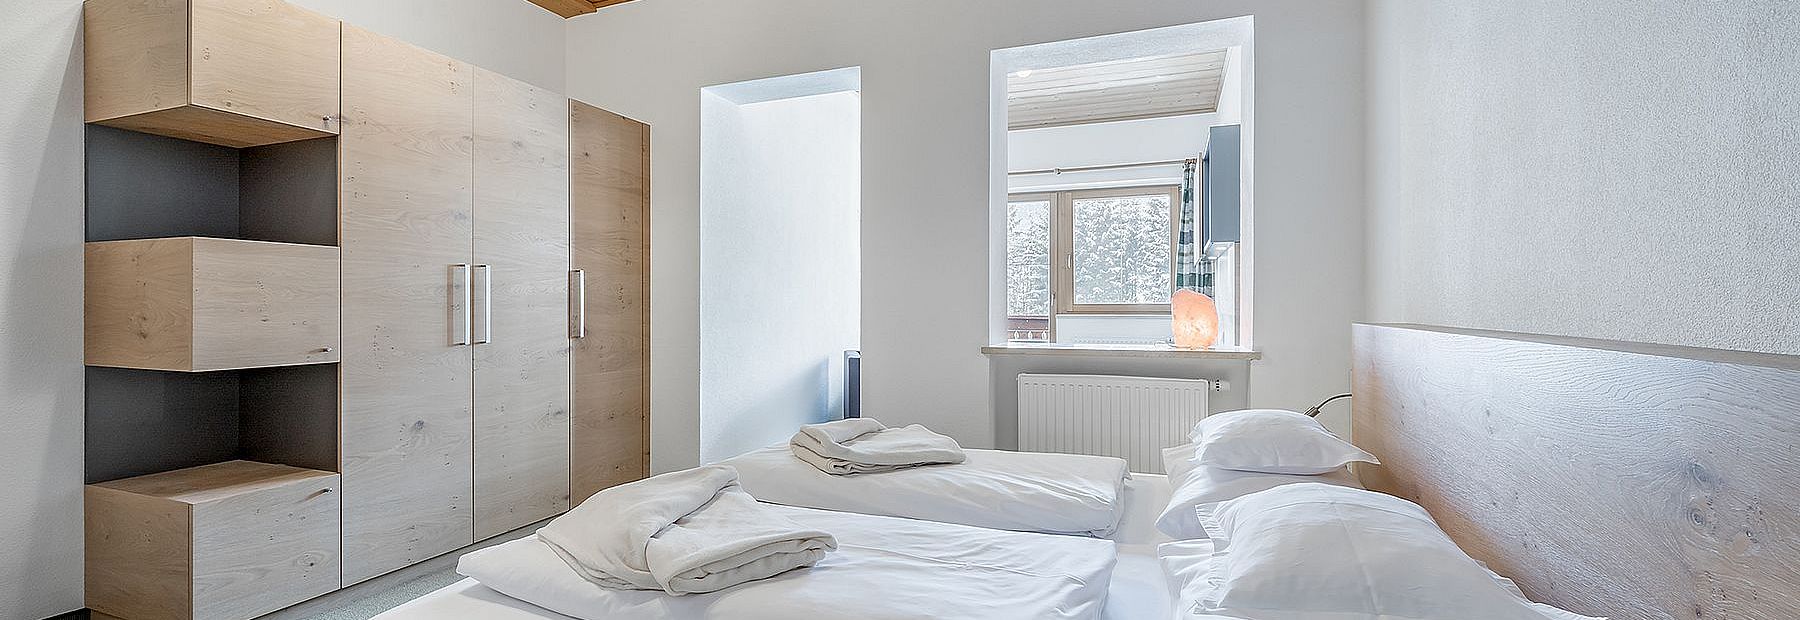 Doppelbett und Wandschrank in einem Hotelzimmer mit Holzdecke mit abgetrenntem Wohnbereich 